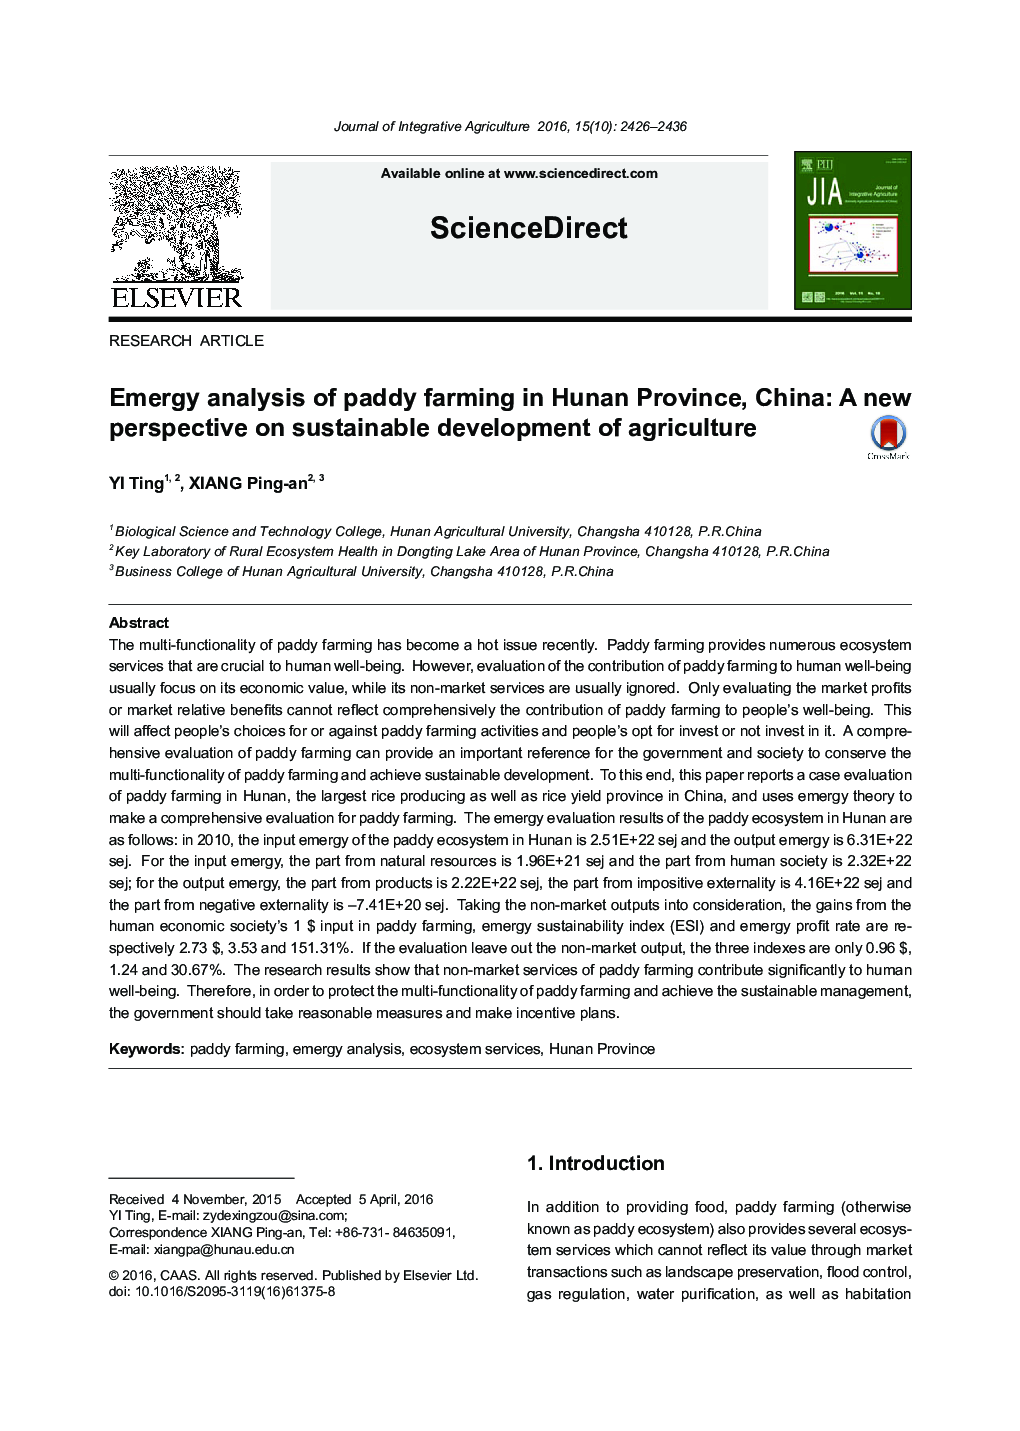 تجزیه و تحلیل نیروهای زراعی کشاورزی در استان هونان، چین: یک دیدگاه جدید در مورد توسعه پایدار کشاورزی 